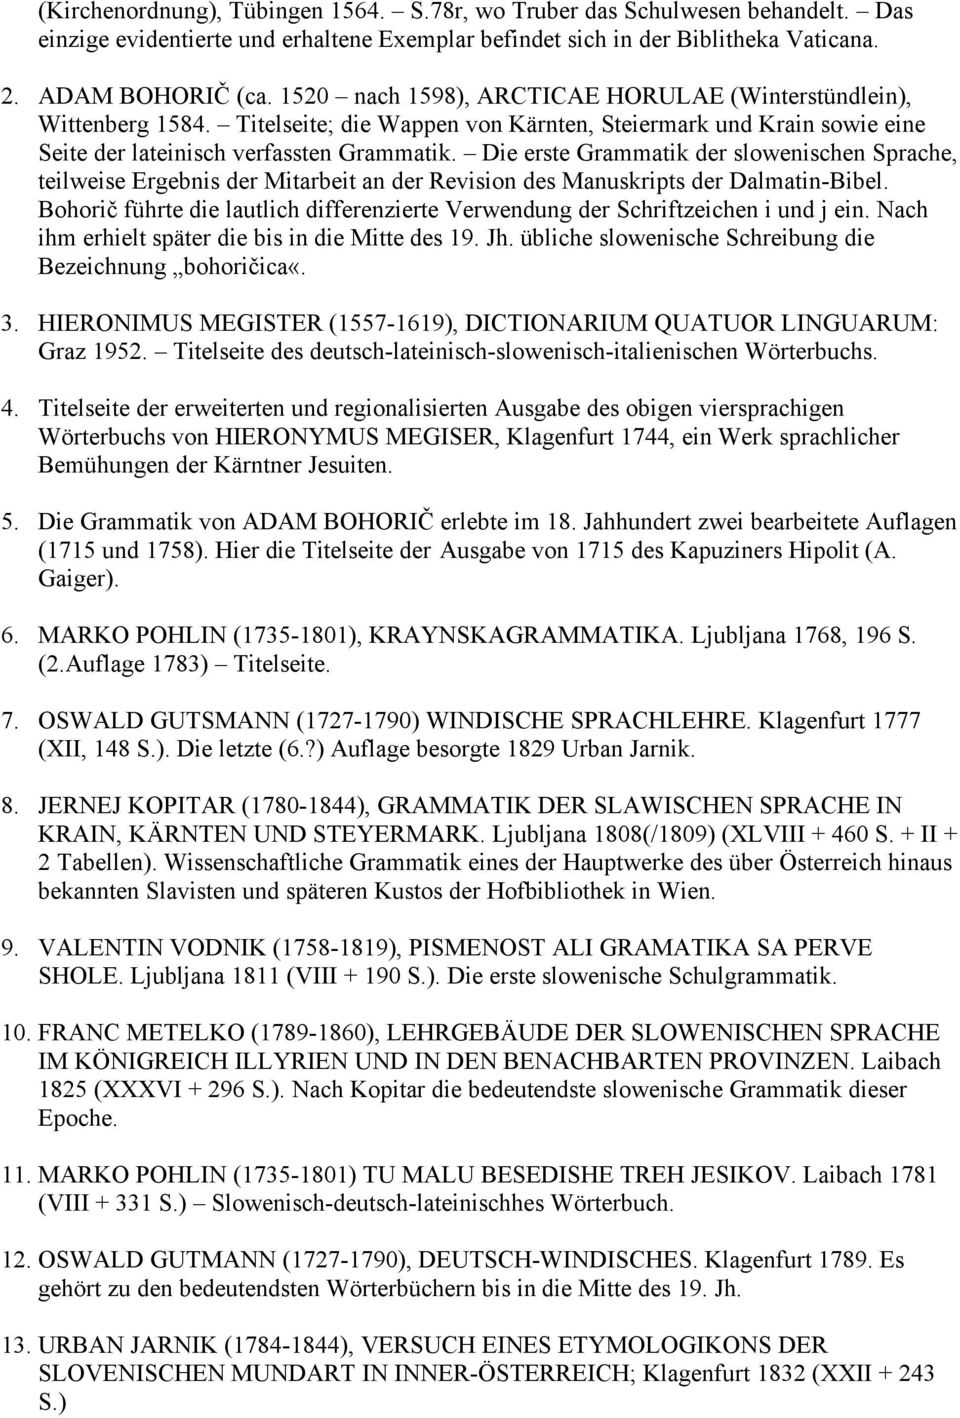 Die erste Grammatik der slowenischen Sprache, teilweise Ergebnis der Mitarbeit an der Revision des Manuskripts der Dalmatin-Bibel.